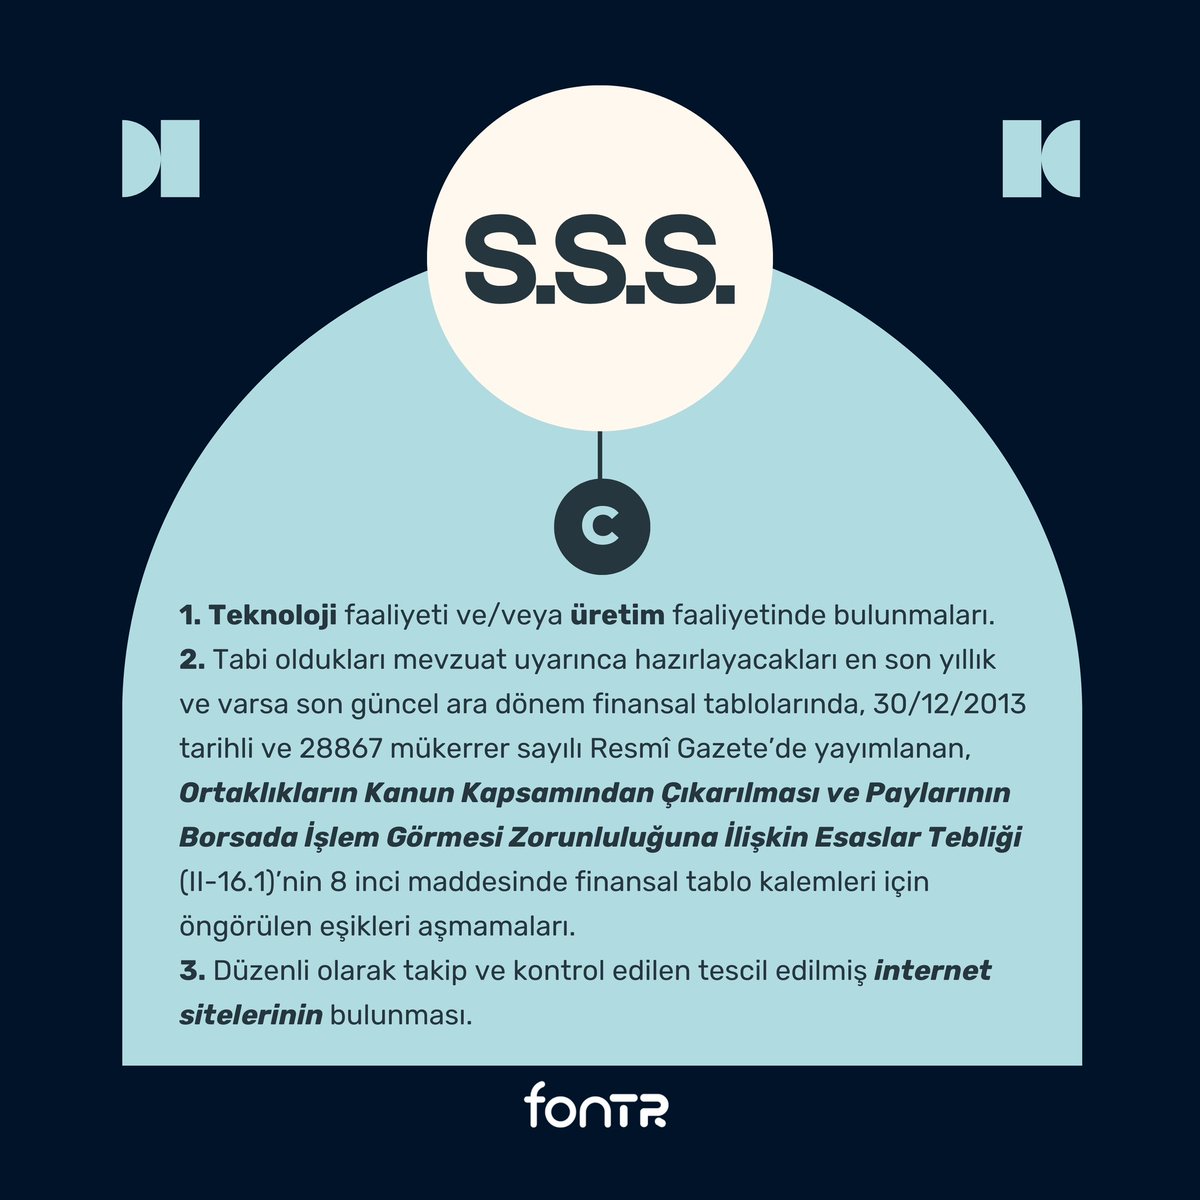 ▫️S.S.S. Serisi

FONTR’de fonlama kampanyası başlatmak için şartlar nelerdir❔

#fontr #kitlefonlama #yatırım #girişim #startup